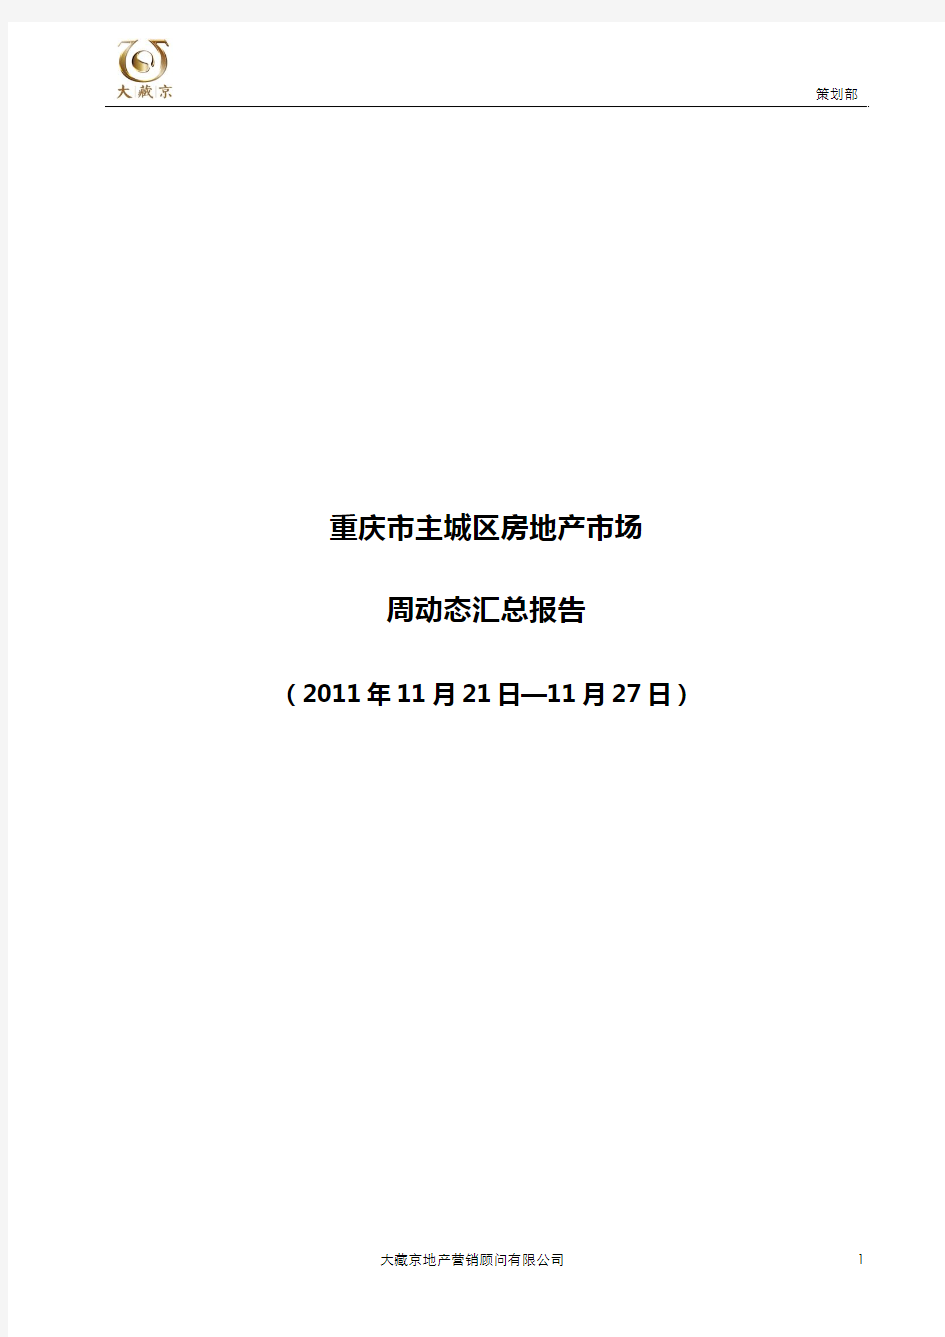 重庆主城房地产市场动态(11.21-11.27)